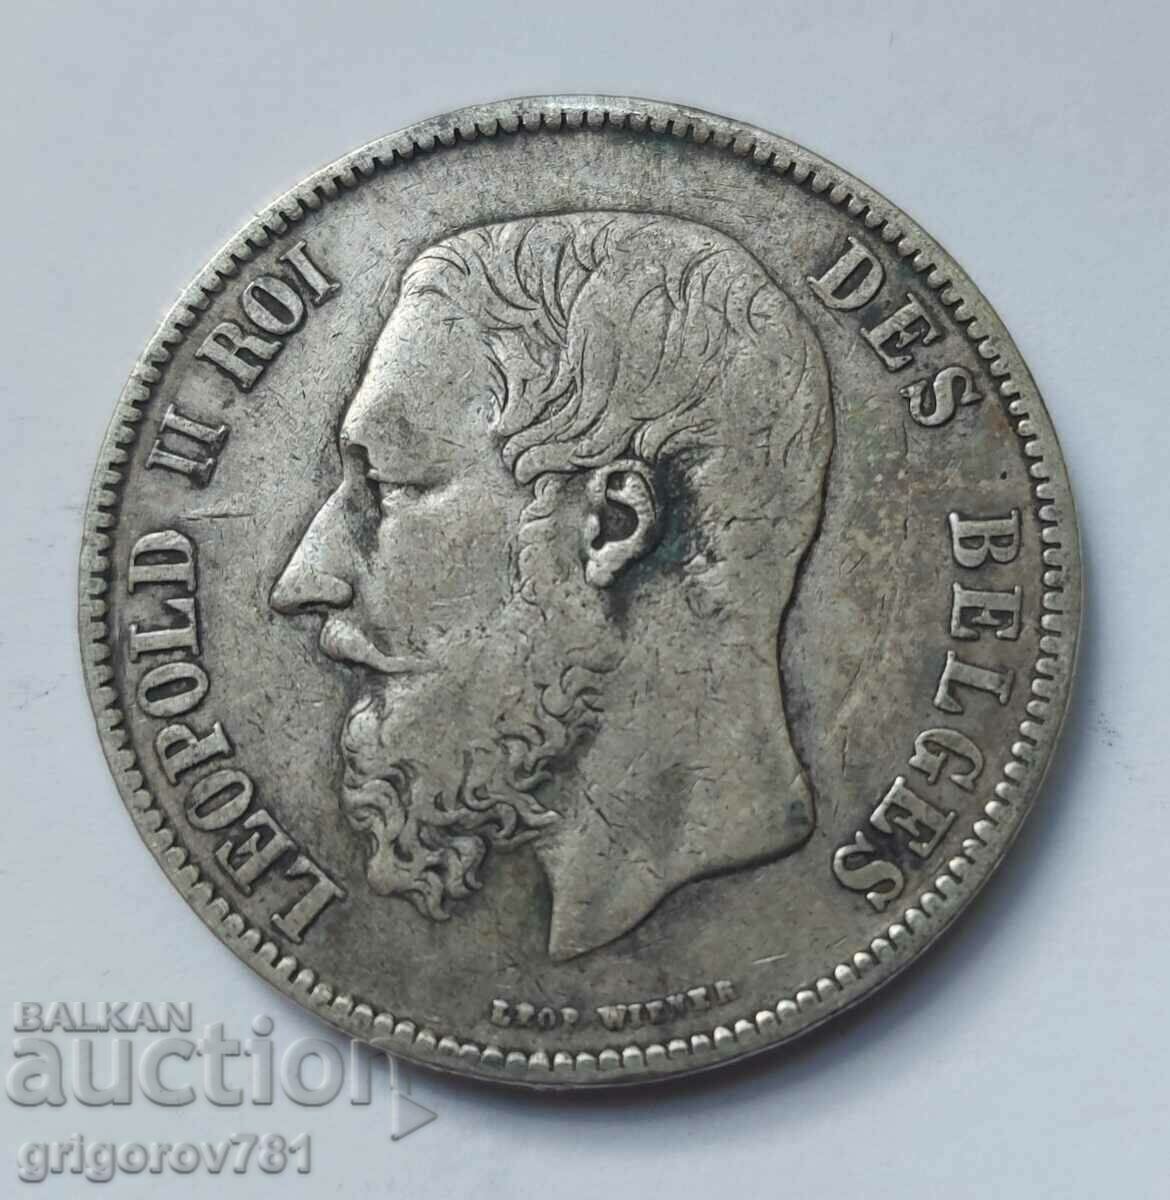 5 Francs Silver Belgium 1870 - Silver Coin #234